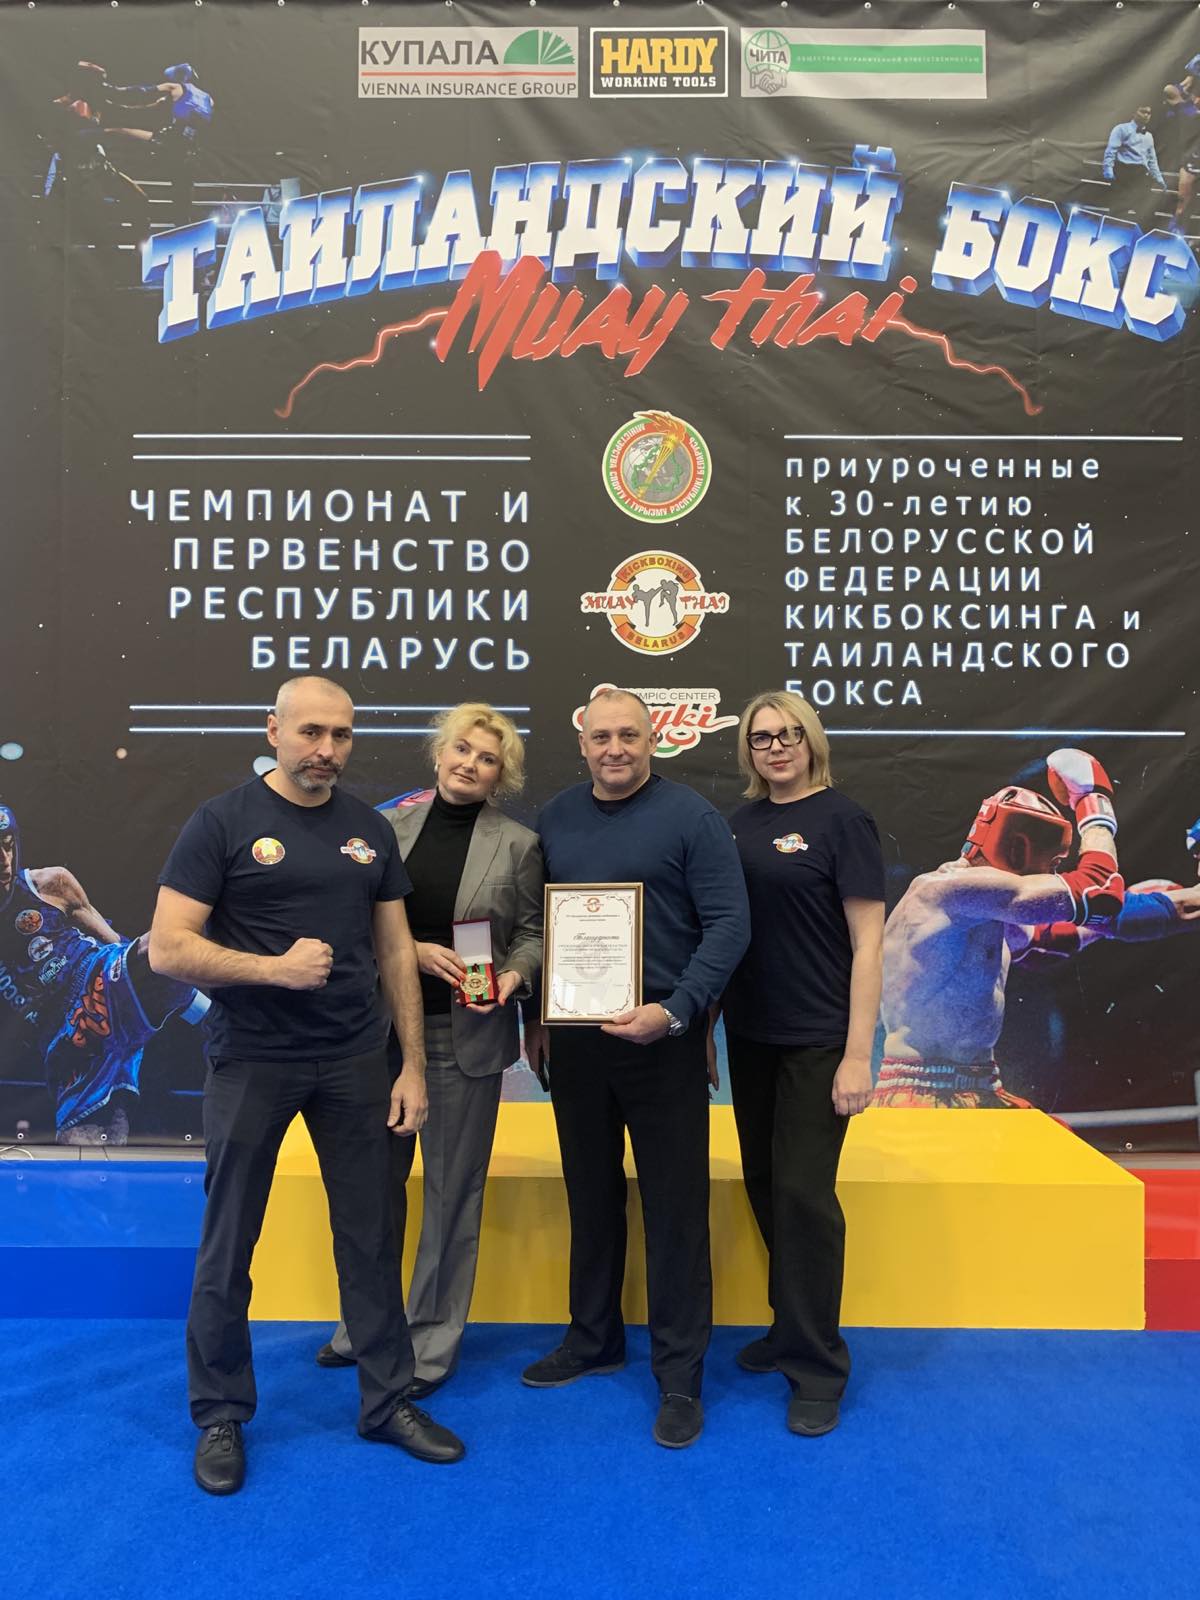 Торжественное мероприятие посвященное 30-ти летию ОО "Белорусской федерации кикбоксинга и таиландского бокса"